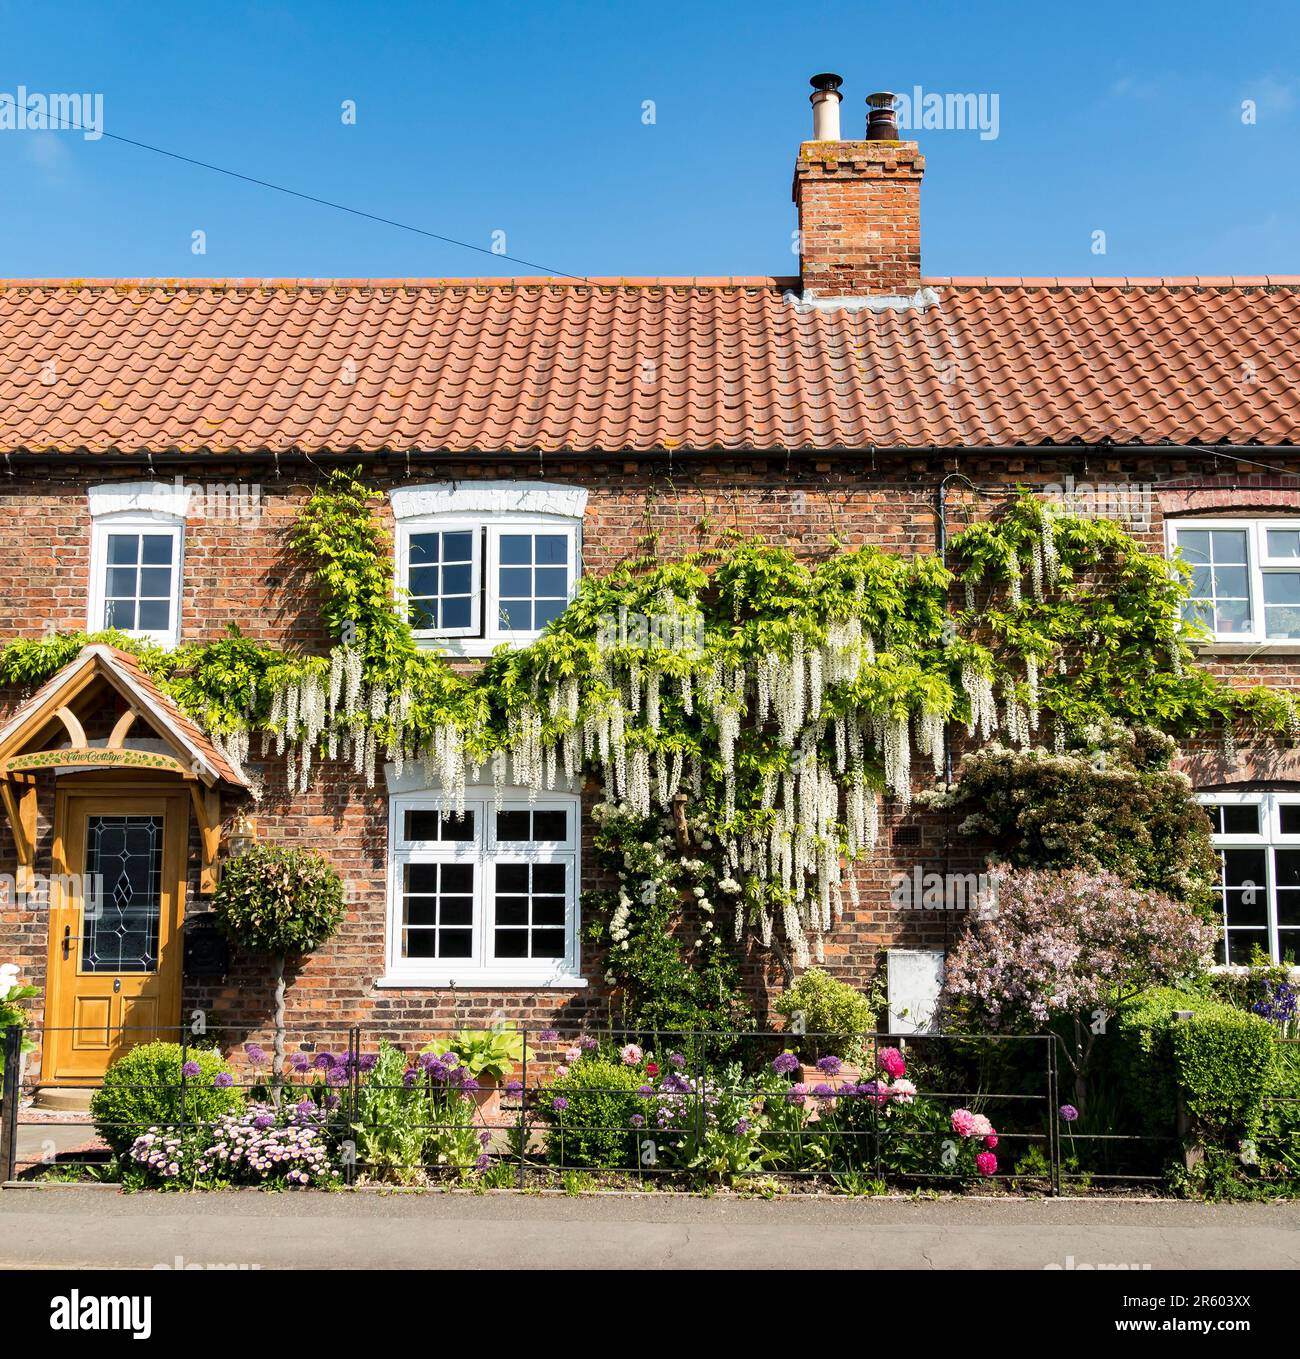 Cottage avec une wisteria blanche en pleine croissance, High Street, Cherry Willingham, Lincolnshire, Angleterre, ROYAUME-UNI Banque D'Images